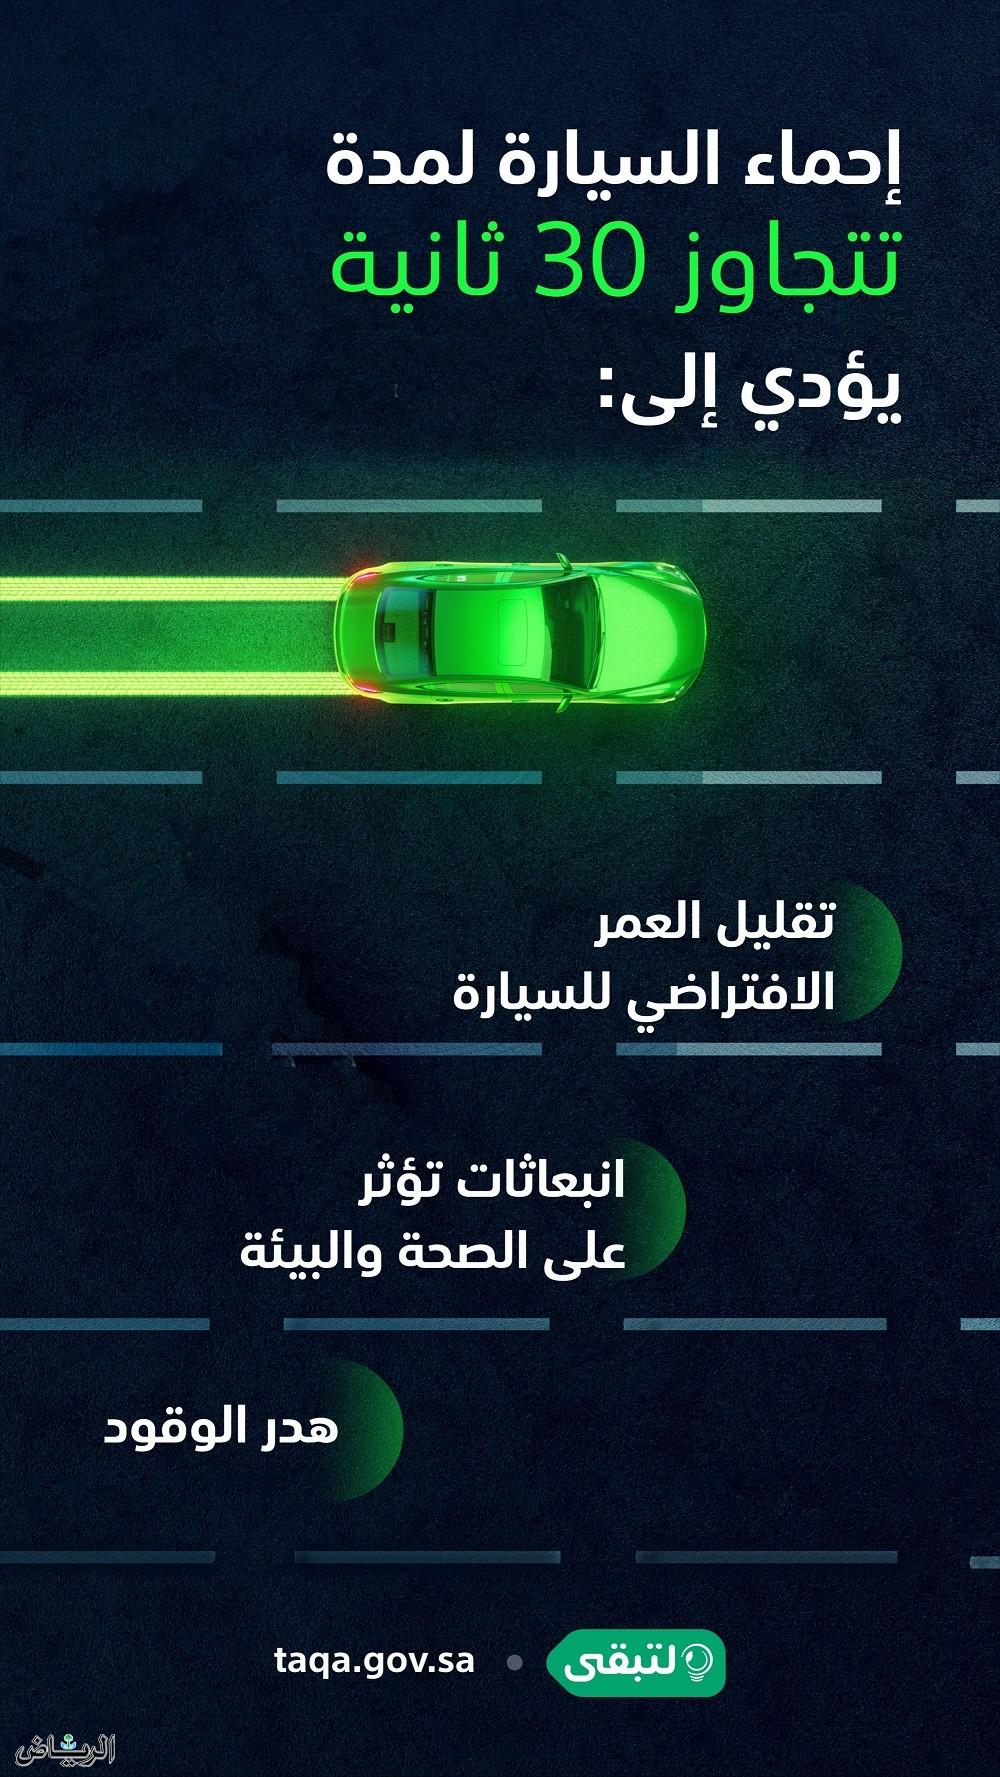 المركز السعودية لكفاءة الطاقة: إحماء السيارة أكثر من 30 ثانية فيه هدر للوقود